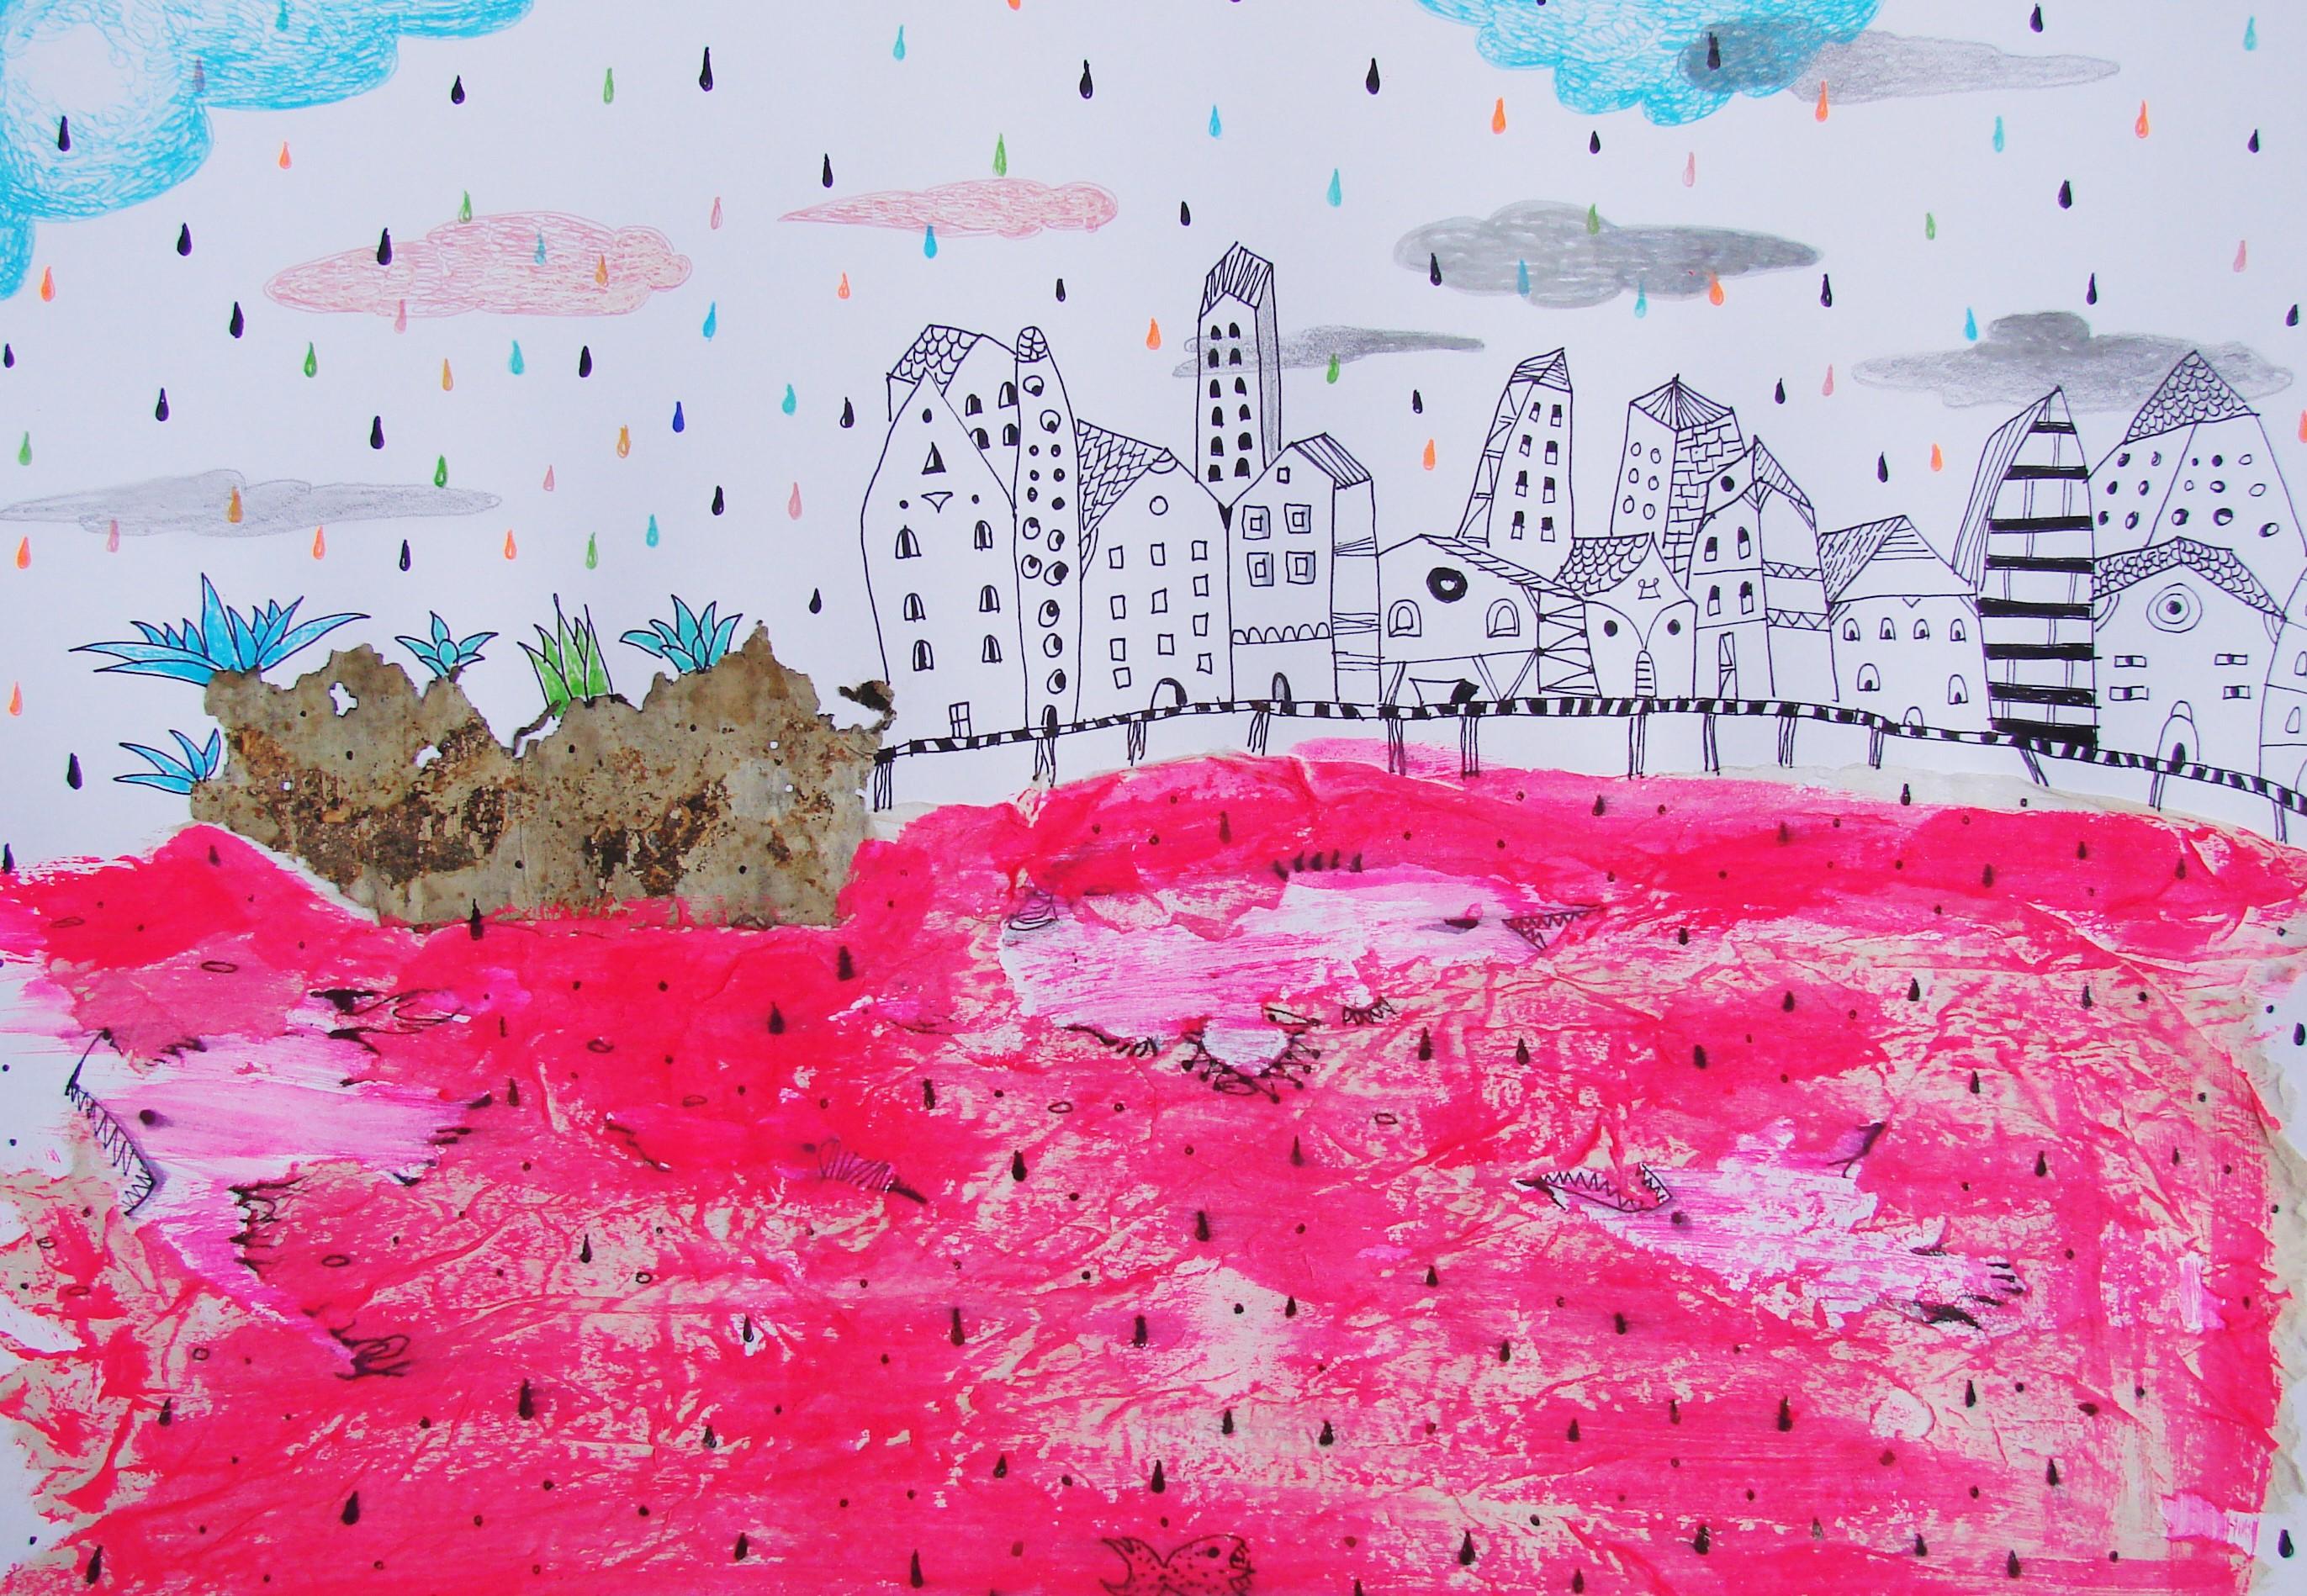 Rotes Meer - Zeitgenössisch, Zeichnung auf Papier, Rosa, traumhaft, figürlich (Surrealismus), Art, von Raluca Arnăutu